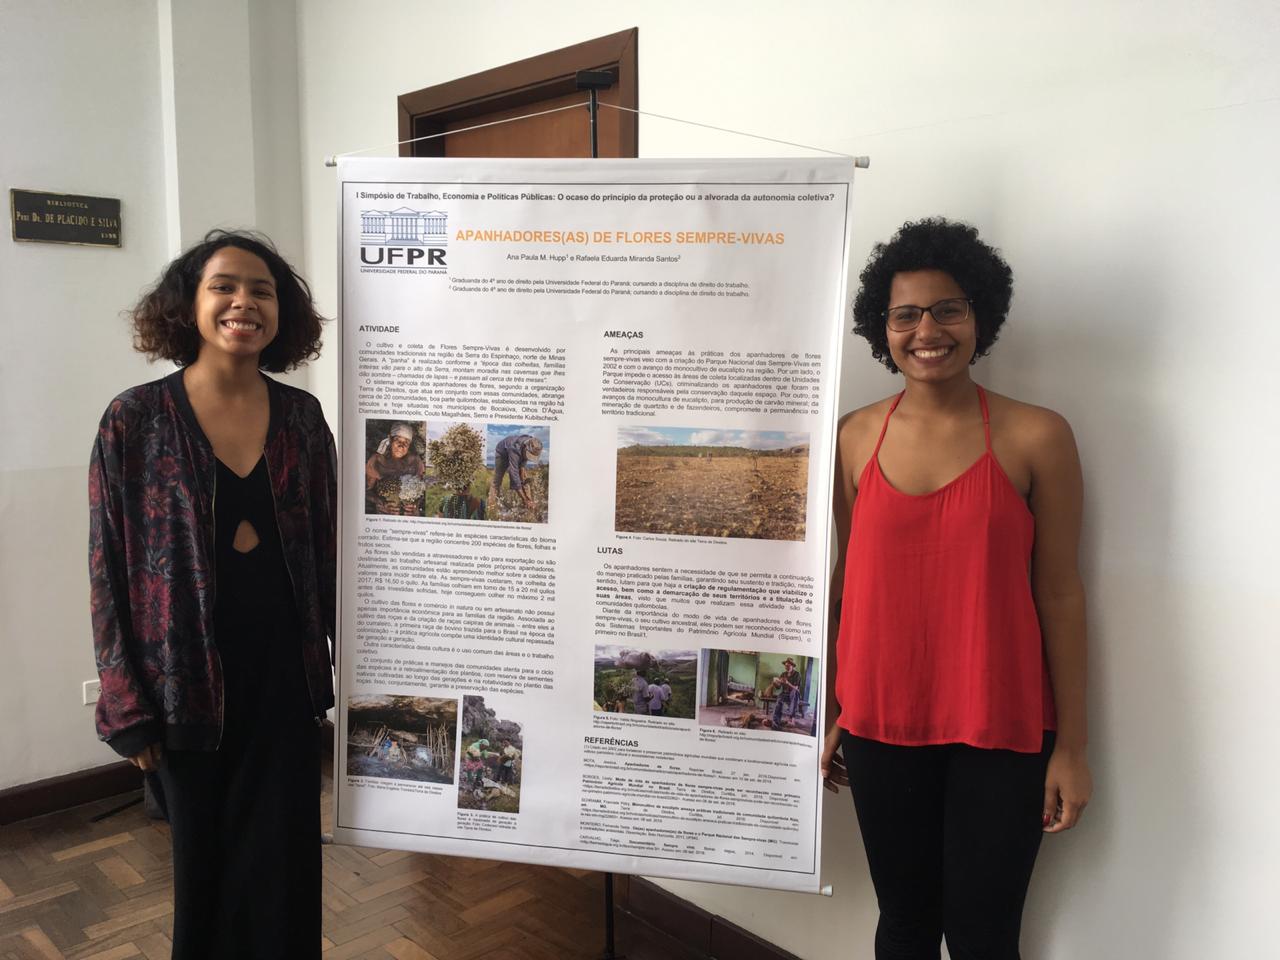 Experiência foi apresentada pelas estudantes Rafaela Eduarda e Ana Paula Hupp, estudantes da Turma Nilce de Souza Magalhães